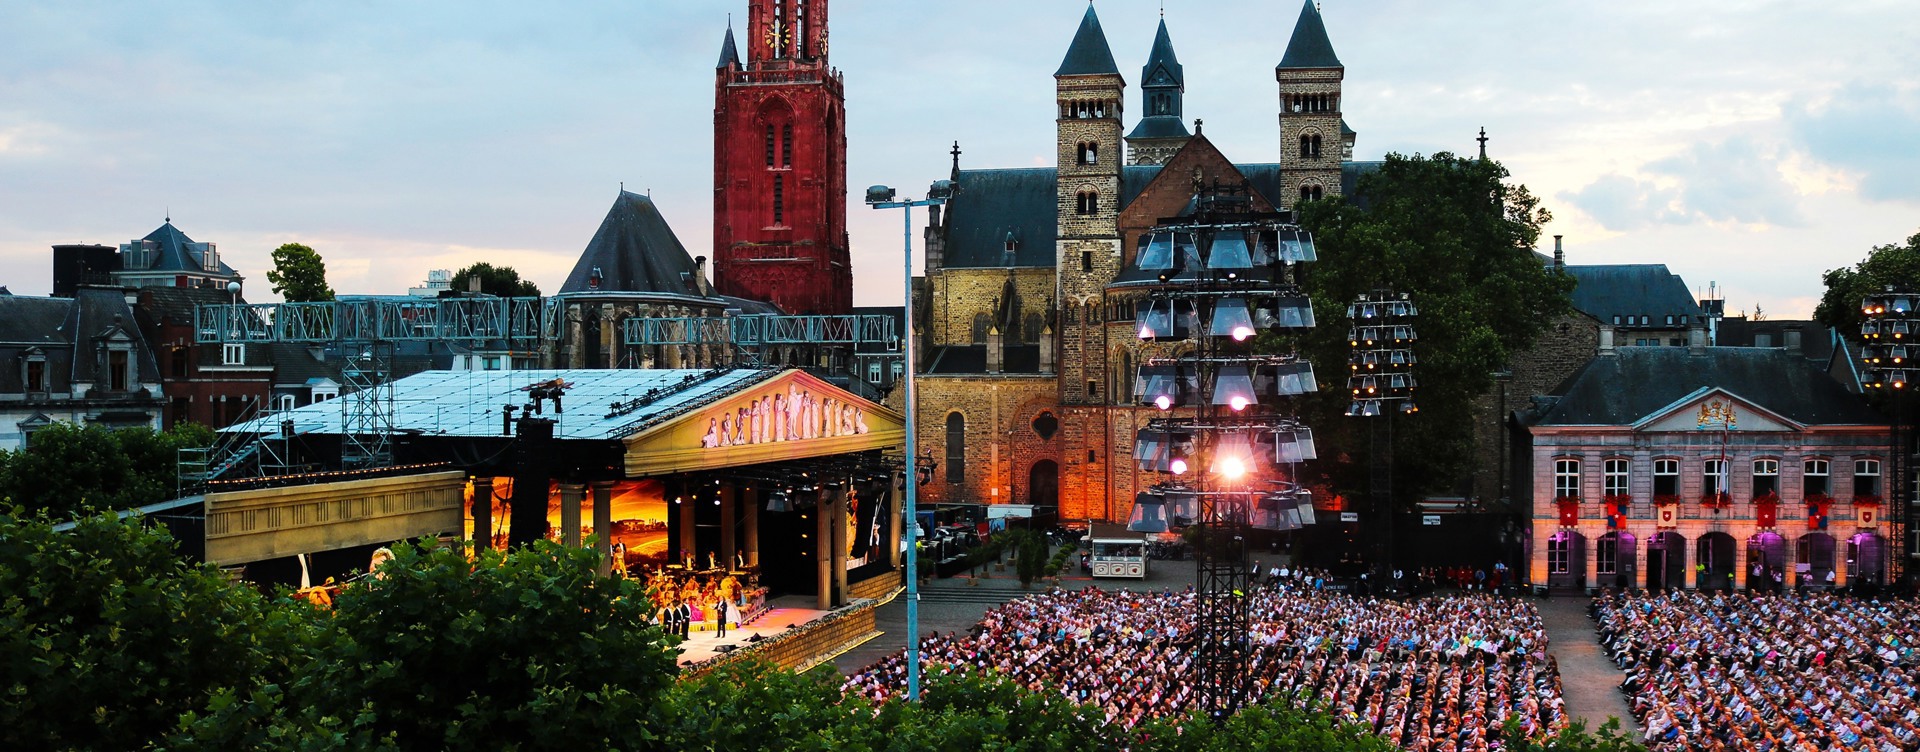 Haz que tu estancia en Maastricht sea una experiencia inolvidable:
acude a cualquiera de los numeros